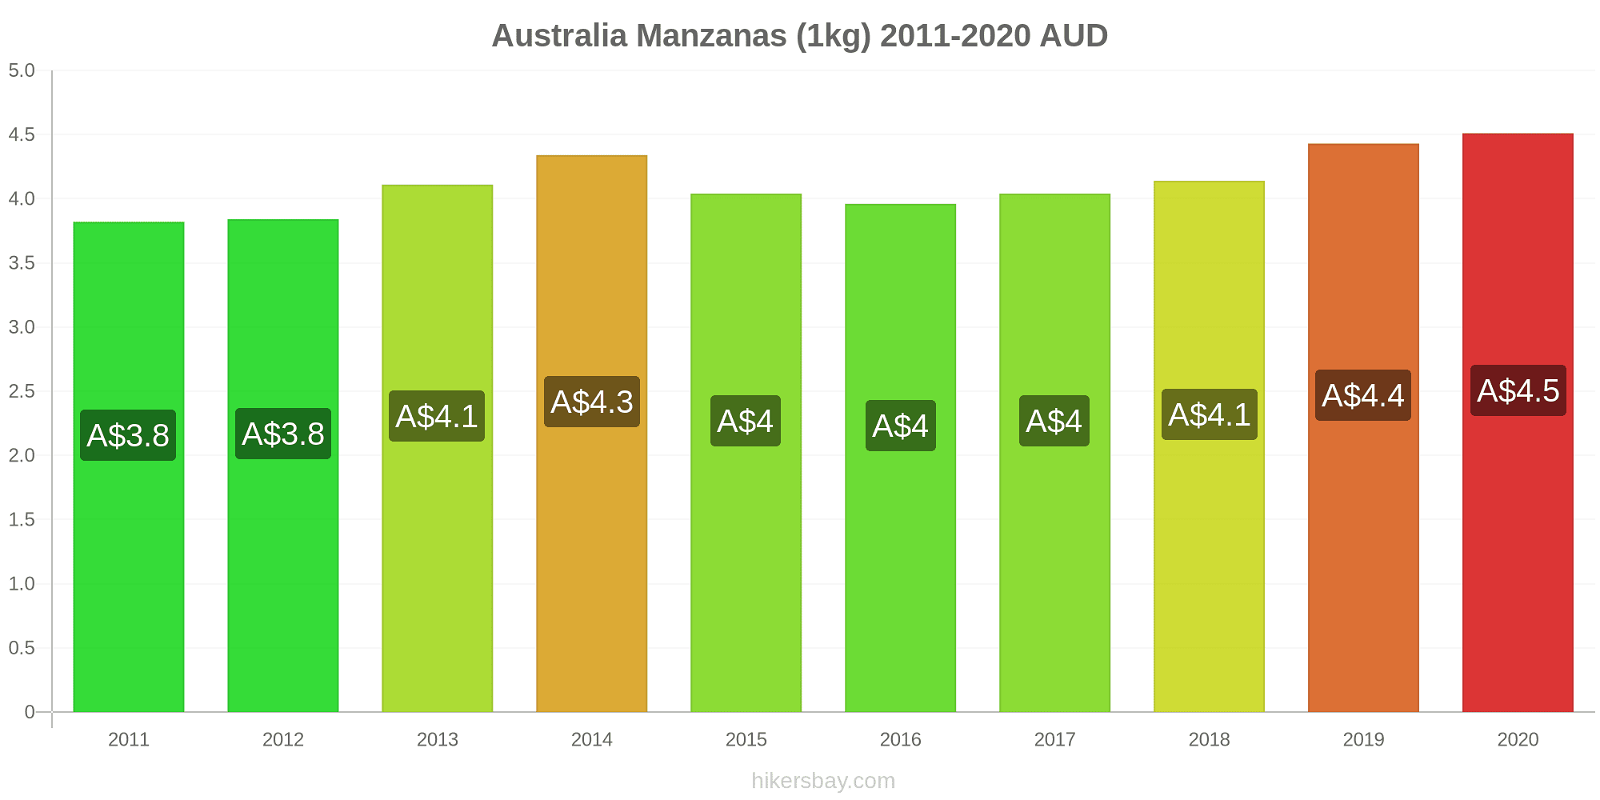 Australia cambios de precios Manzanas (1kg) hikersbay.com